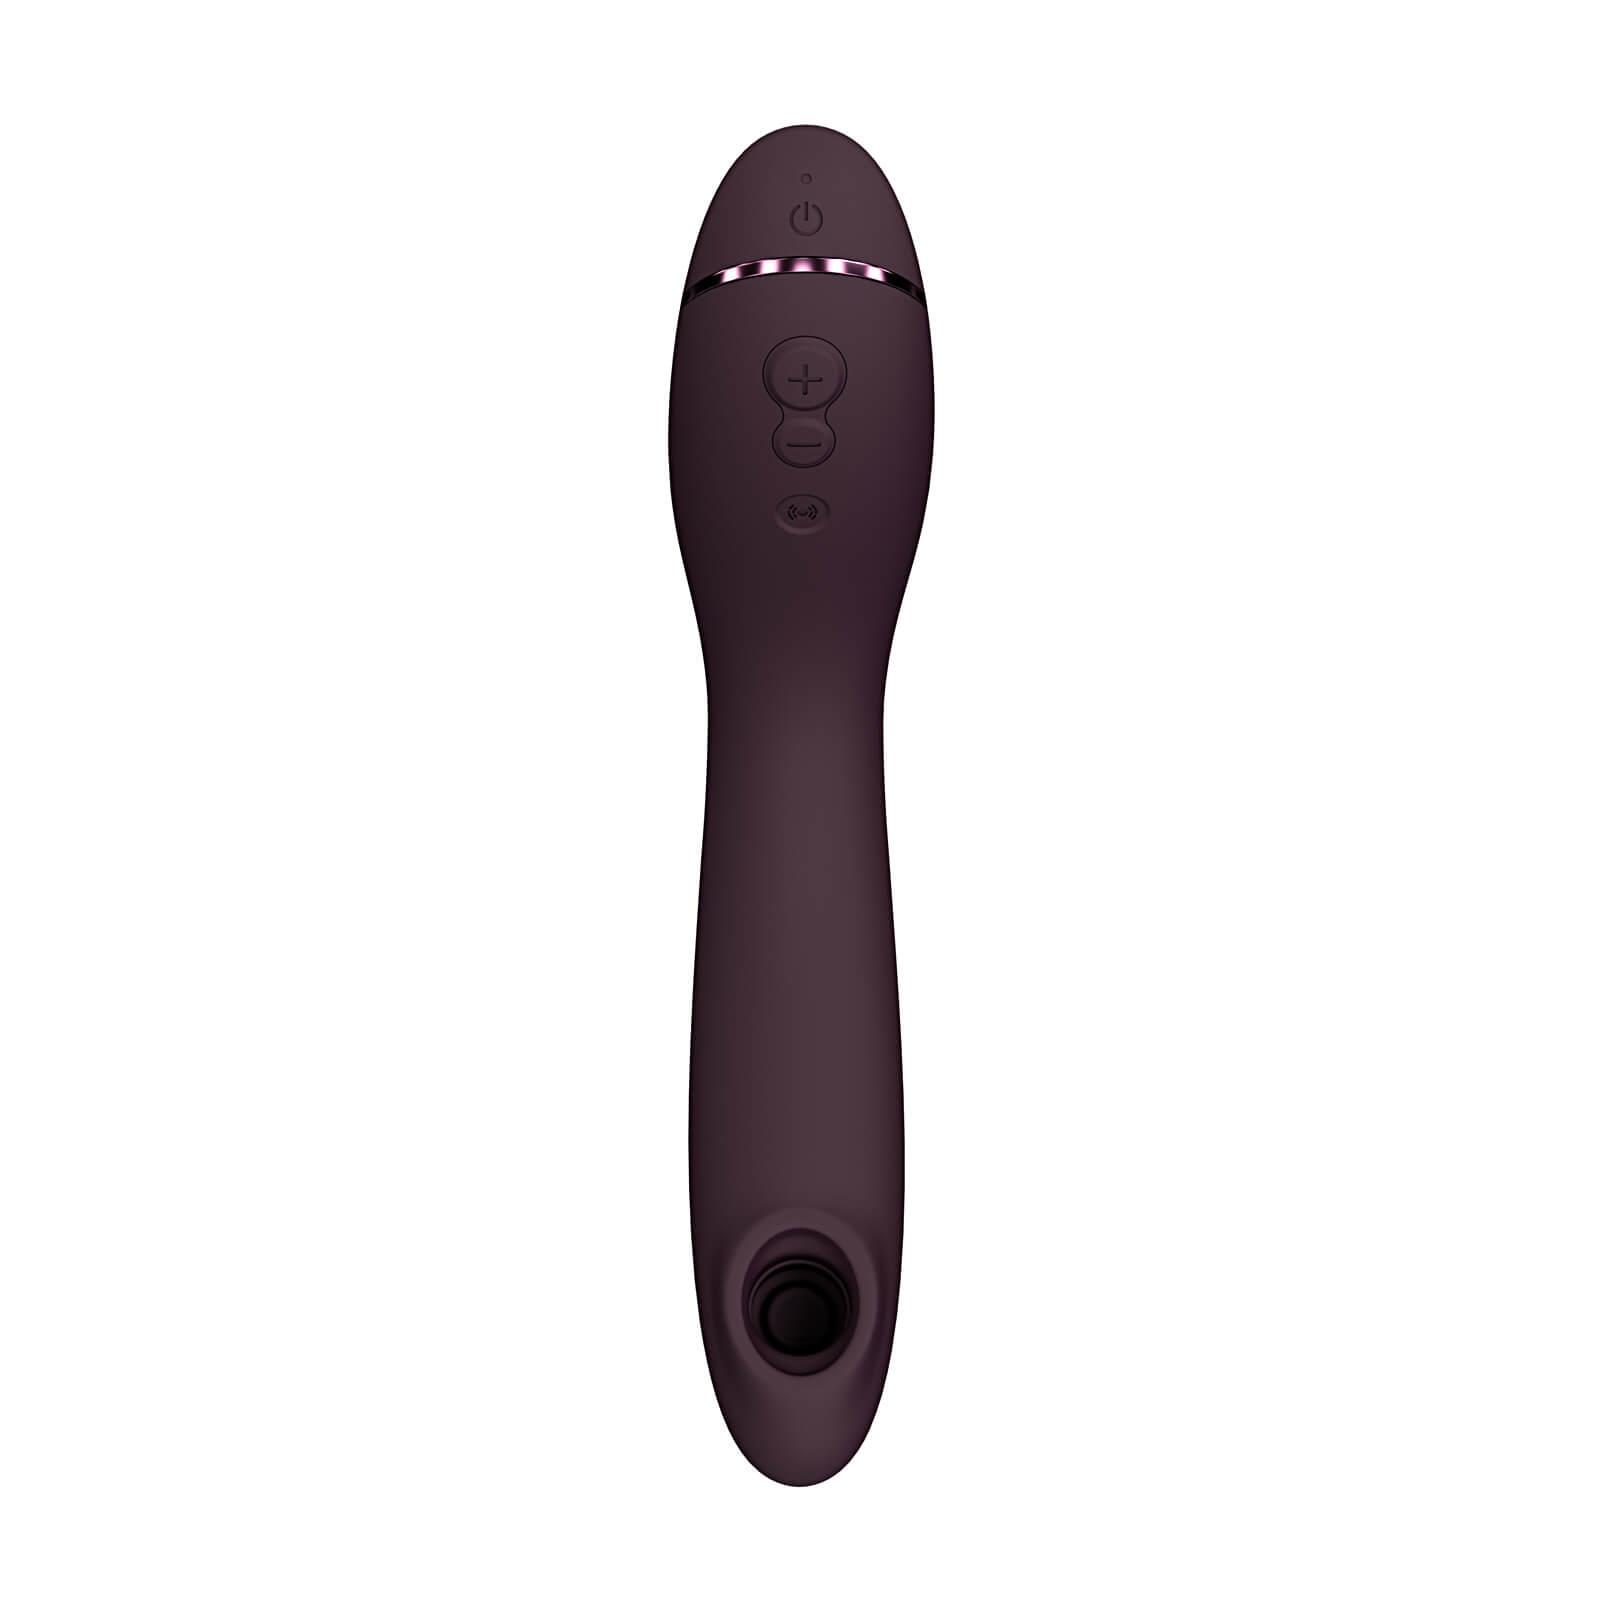 Womanizer OG (Aubergine), a unique G-Spot vibrator